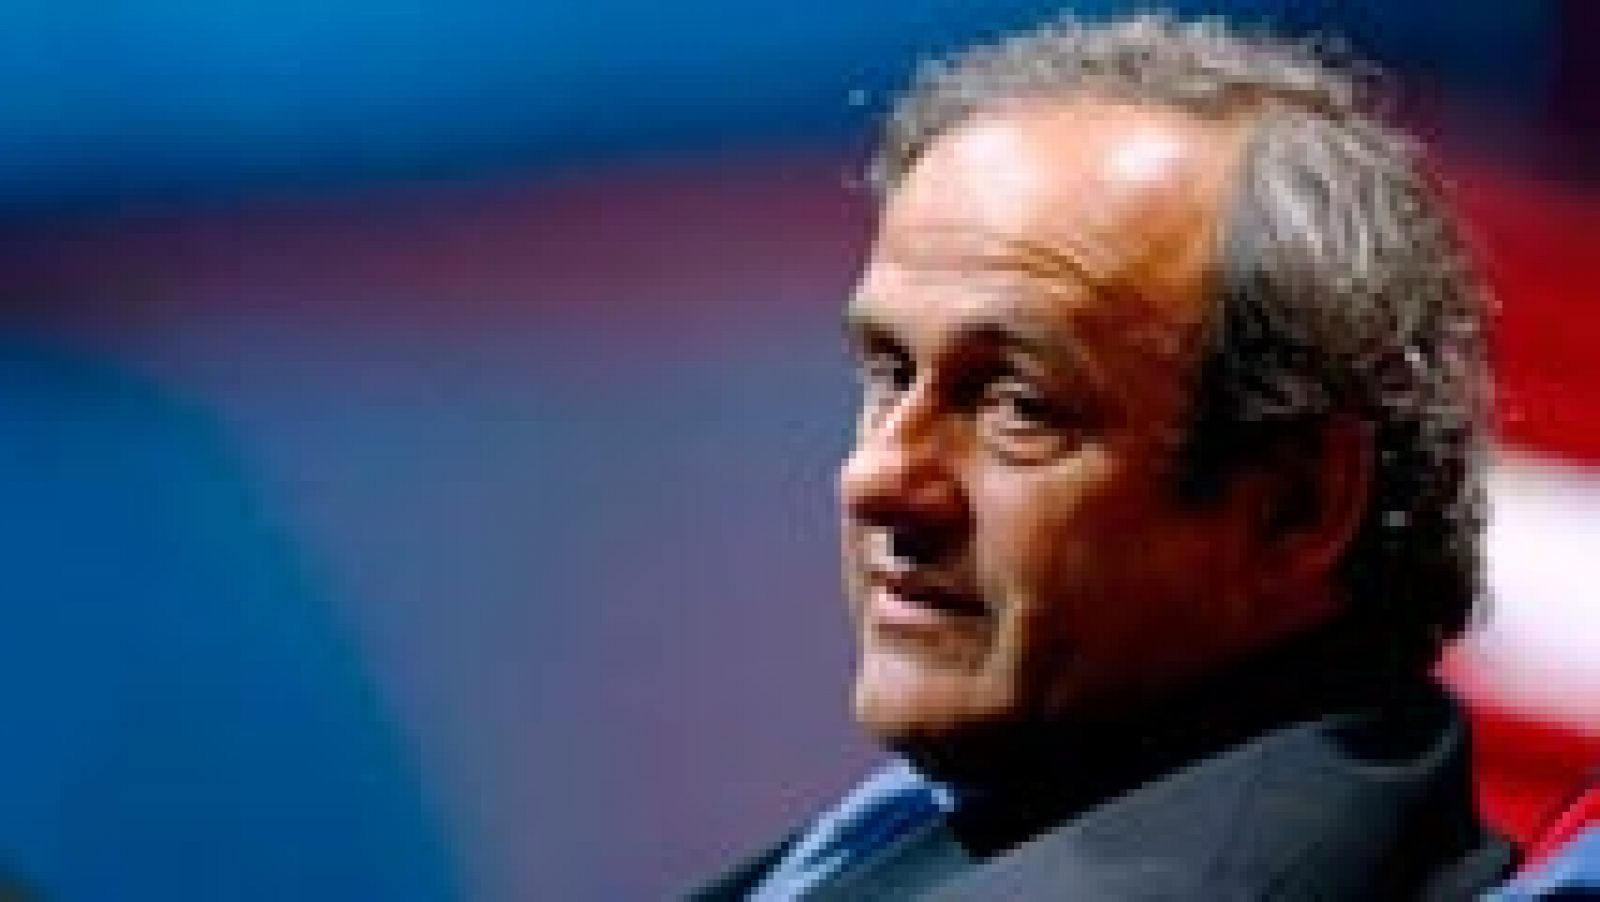 El presidente de la UEFA y vicepresidente de la FIFA, Michel Platini, aseguró que lo que más le molesta de su suspensión provisional dictada por el Comité de Ética de la organización que dirige el fútbol mundial es que se le meta "en el mismo saco que los demás".